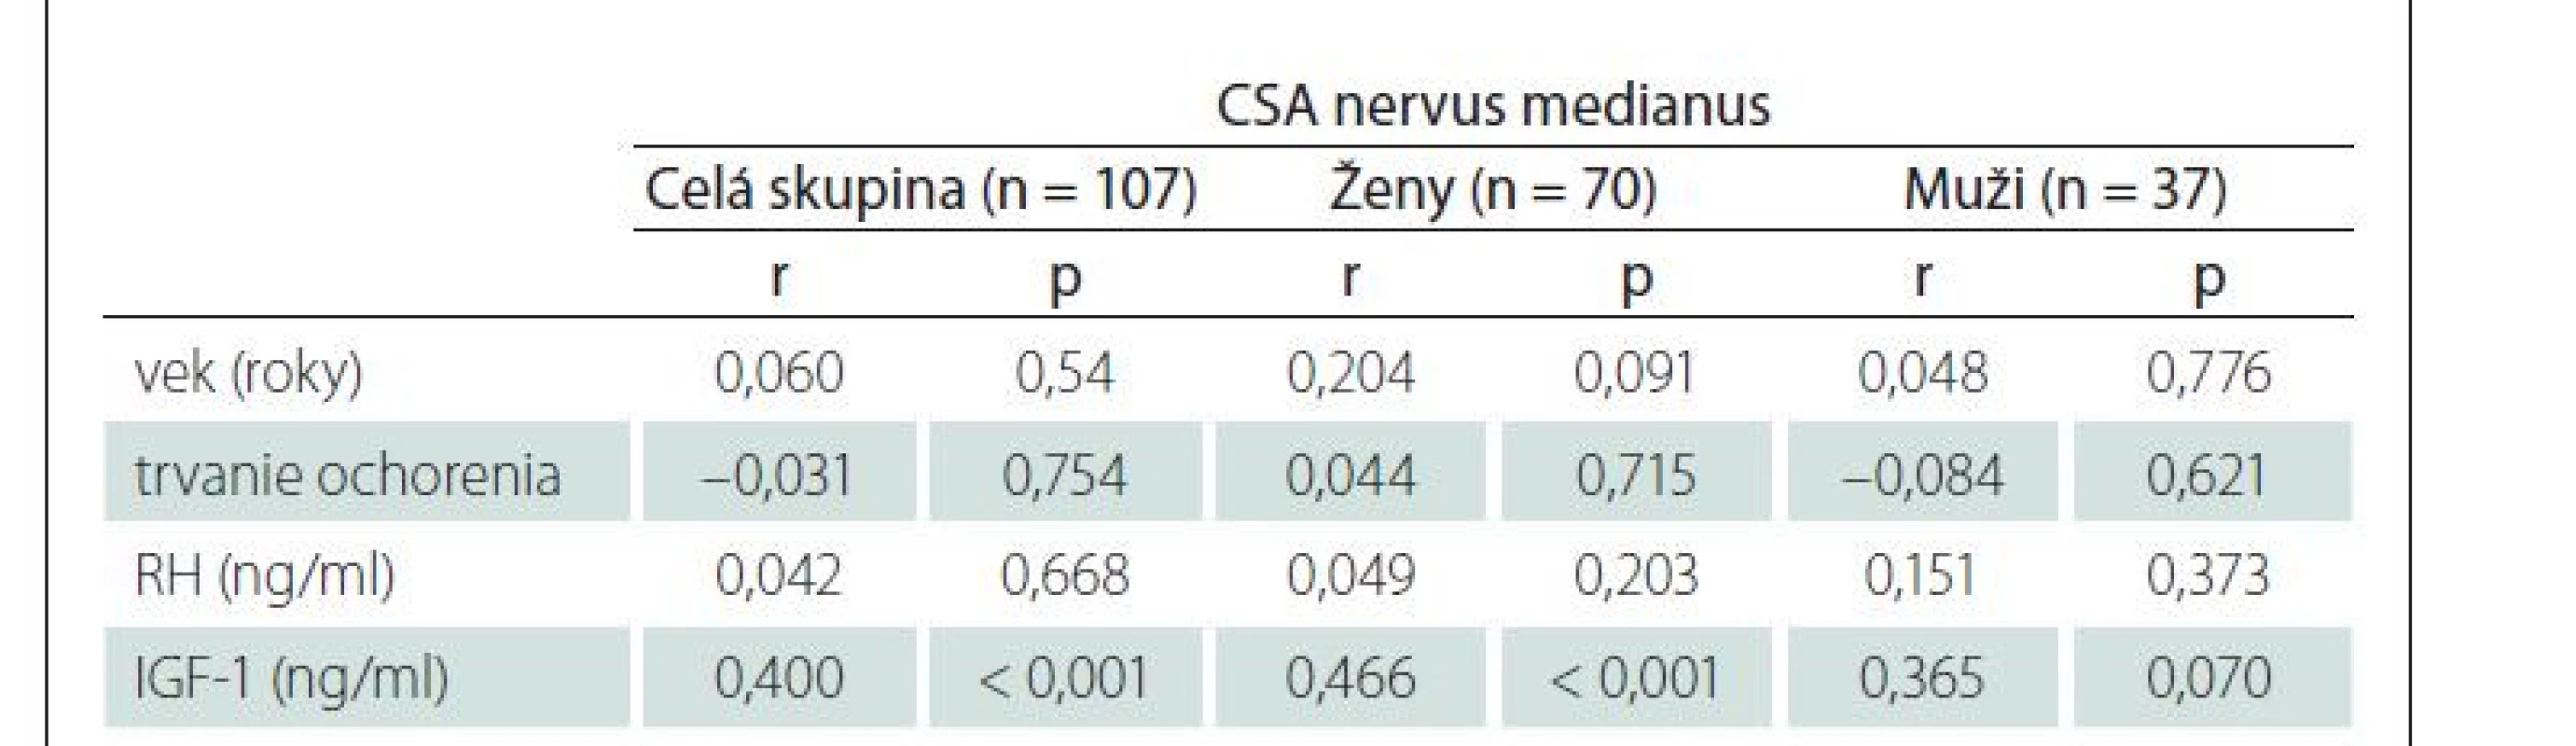 Korelácie u akromegalických pacientov medzi CSA nervus medianus a vekom
pacientov, aktivitou/trvaním akomegálie.